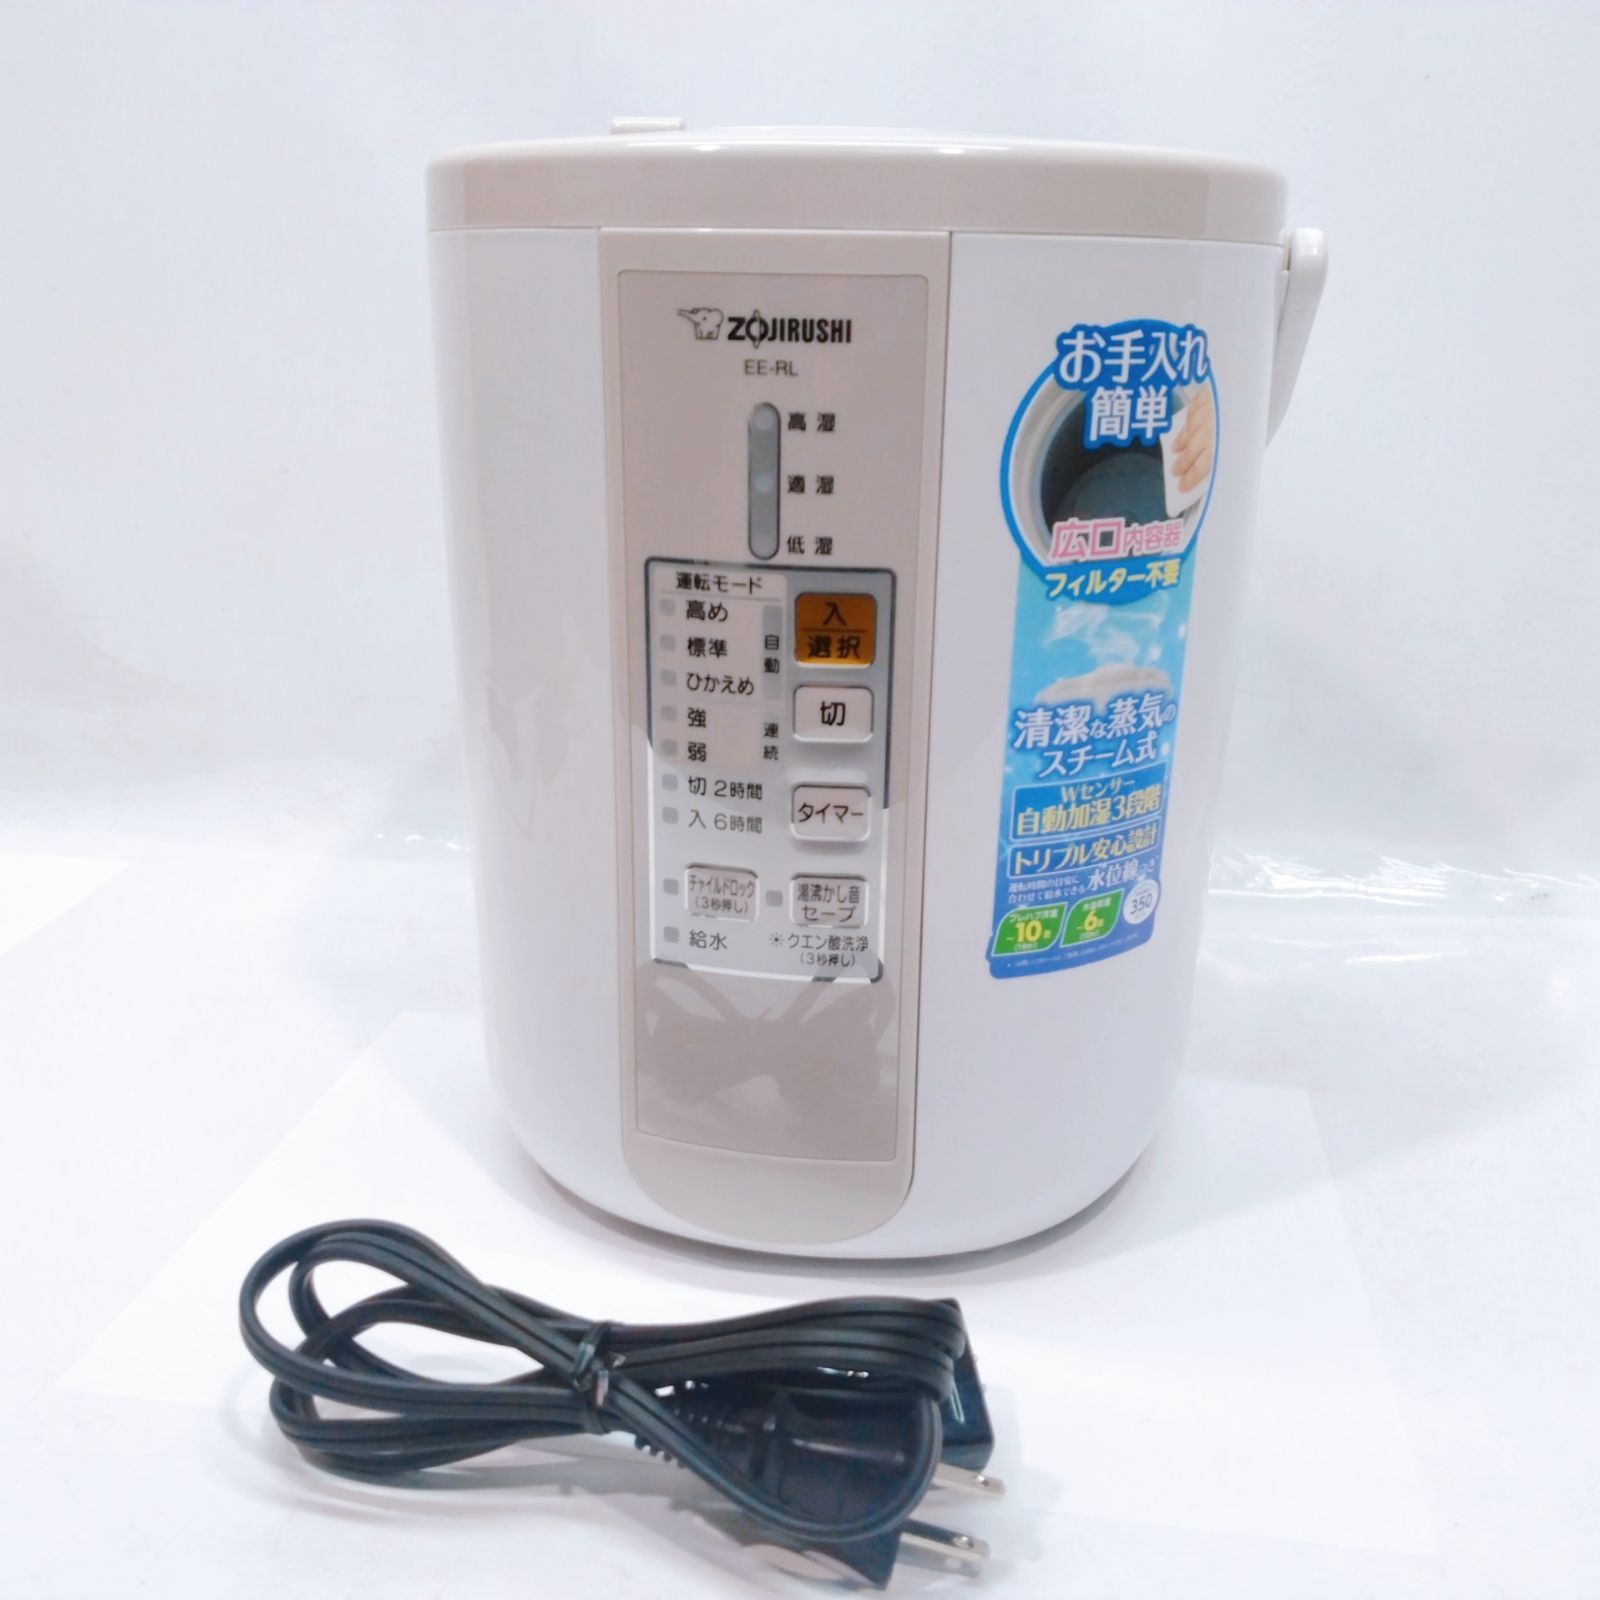 大人気の ZOJIRUSHI スチーム式 加湿器 EE-RL35 象印 5916円 冷暖房/空調